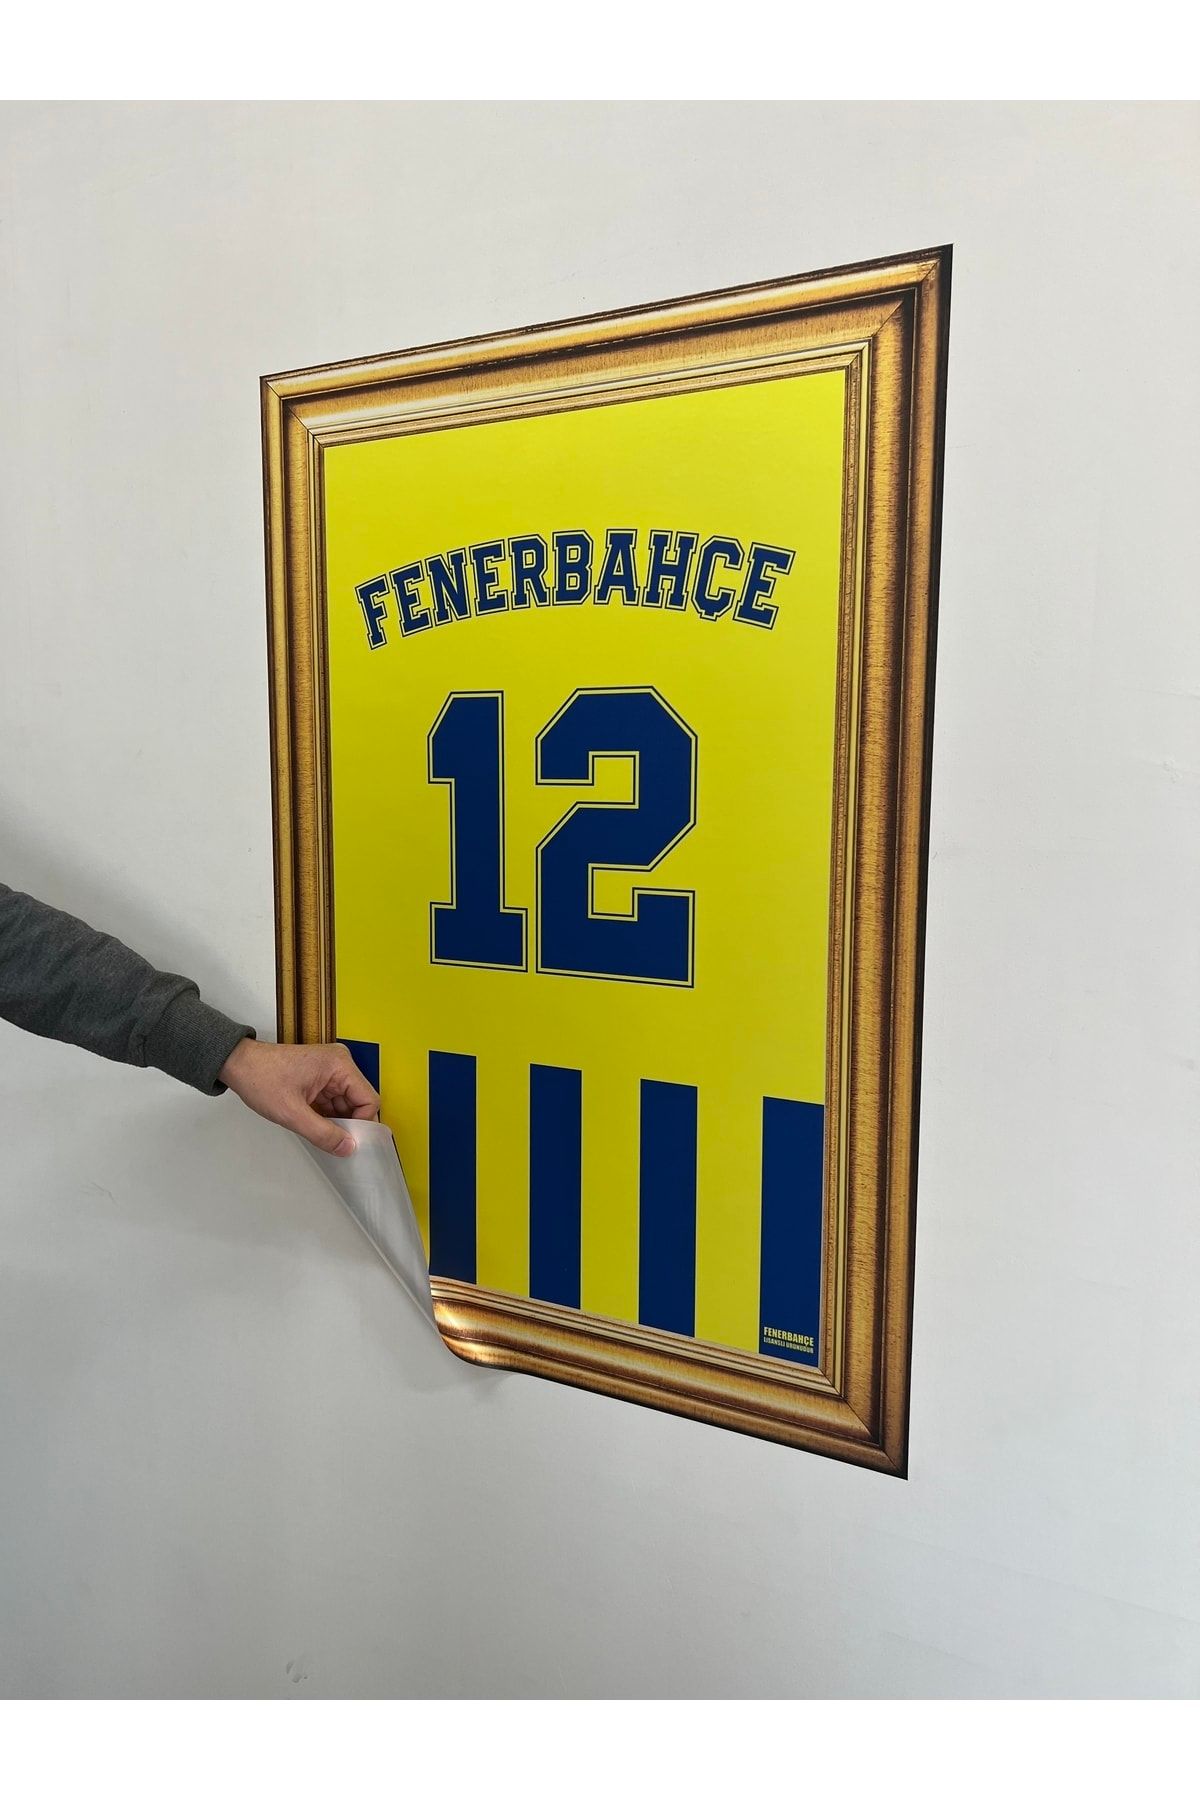 Fenerbahçe Odyak Statıkıum Tablo 12 Pratik Statik Kağıt Yapışkansız Tutunabilir Fb Lisanslı Orijinal